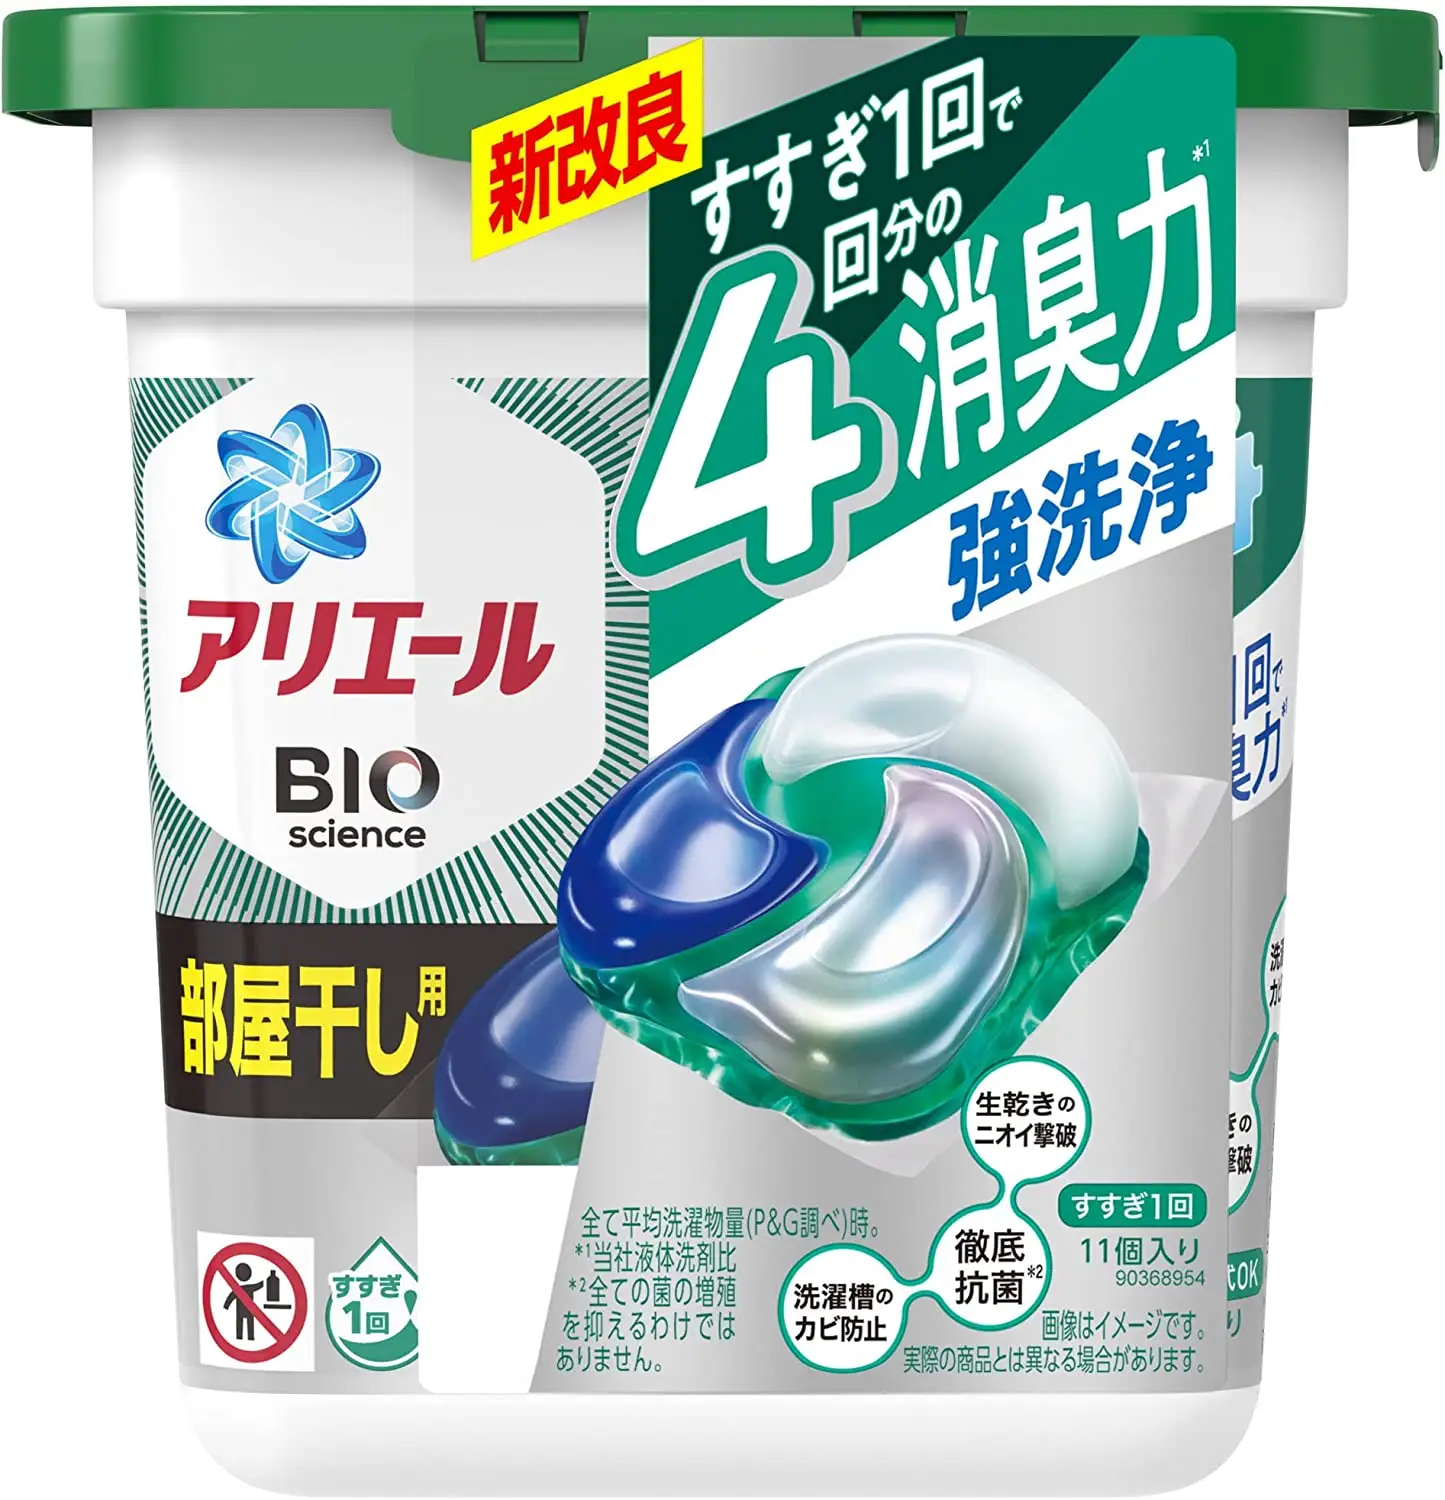 Cápsulas de detergente para ropa, 4 en 1 productos de limpieza de alta calidad, desodorización P & G, secado de ropa, 12 Uds.